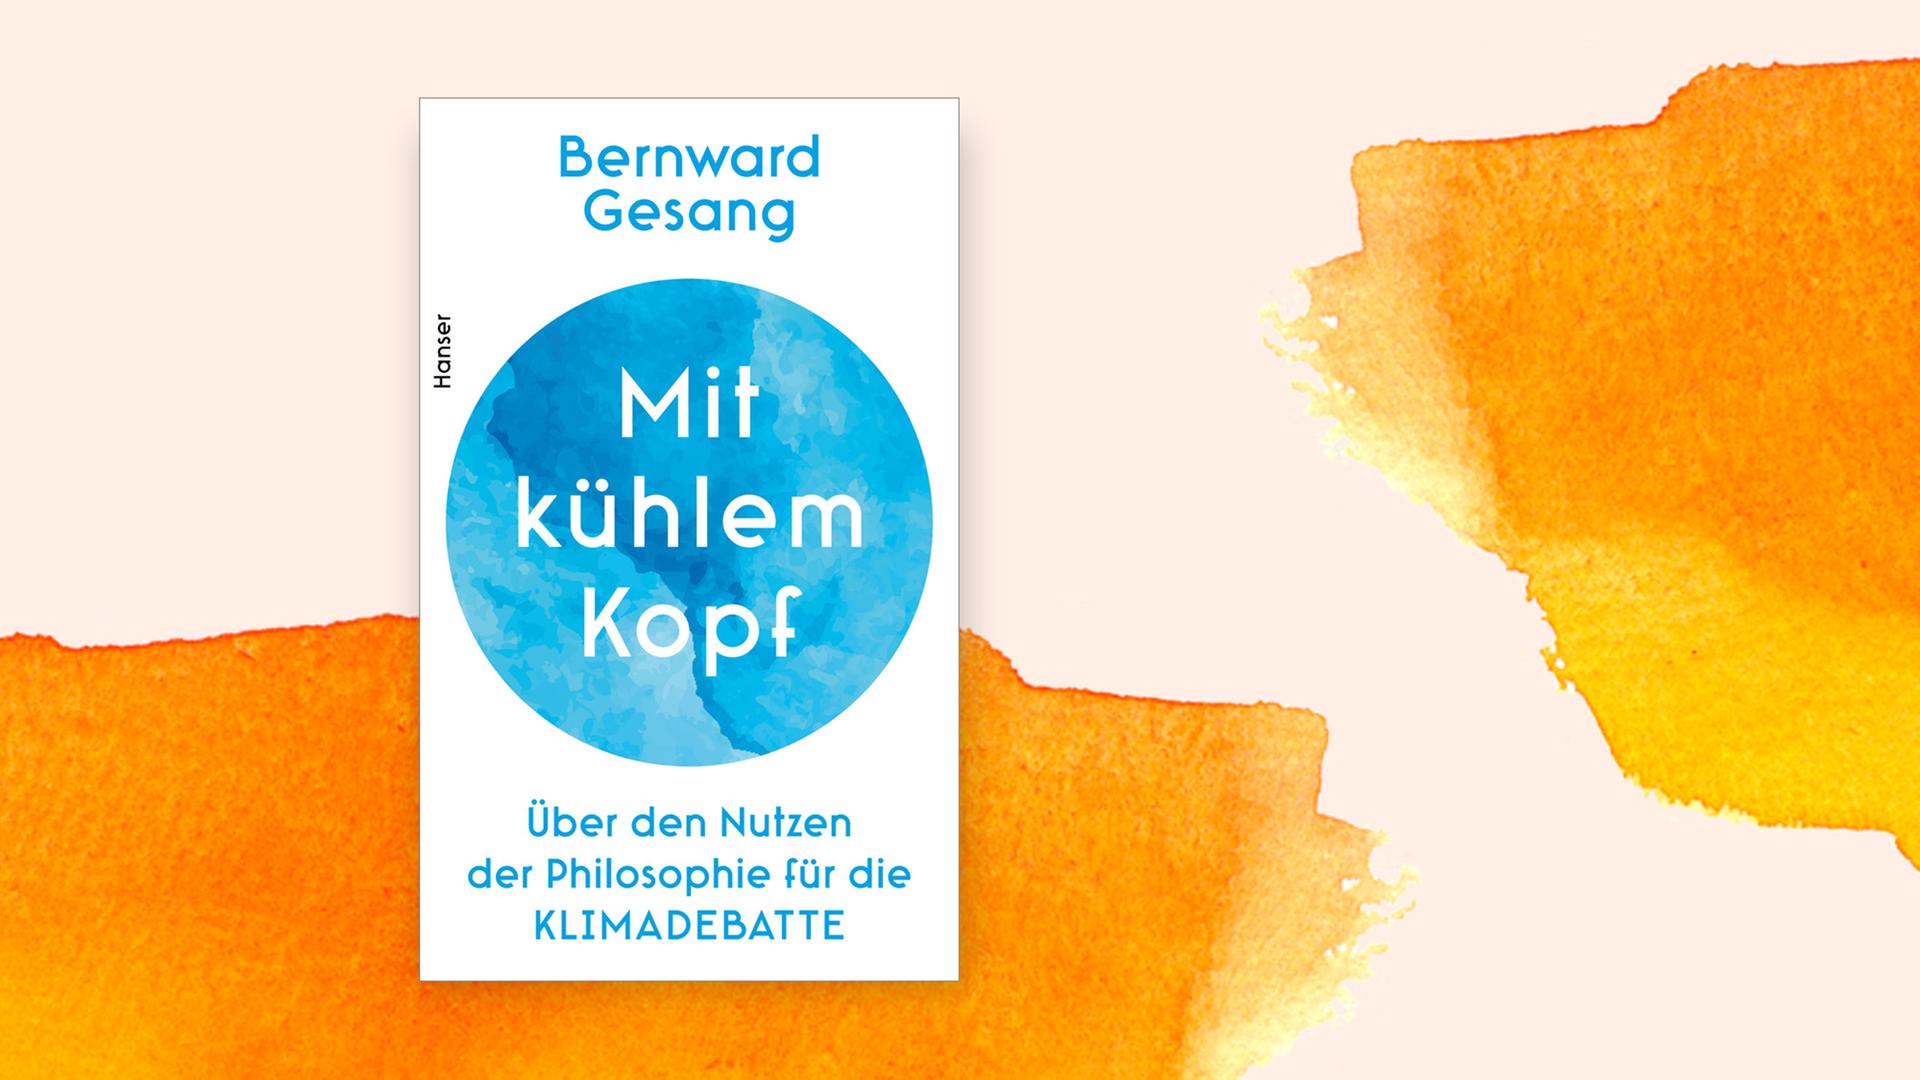 Das Cover von Bernward Gesangs Buch "Mit kühlem Kopf" auf orangefarbenem Aquarell.